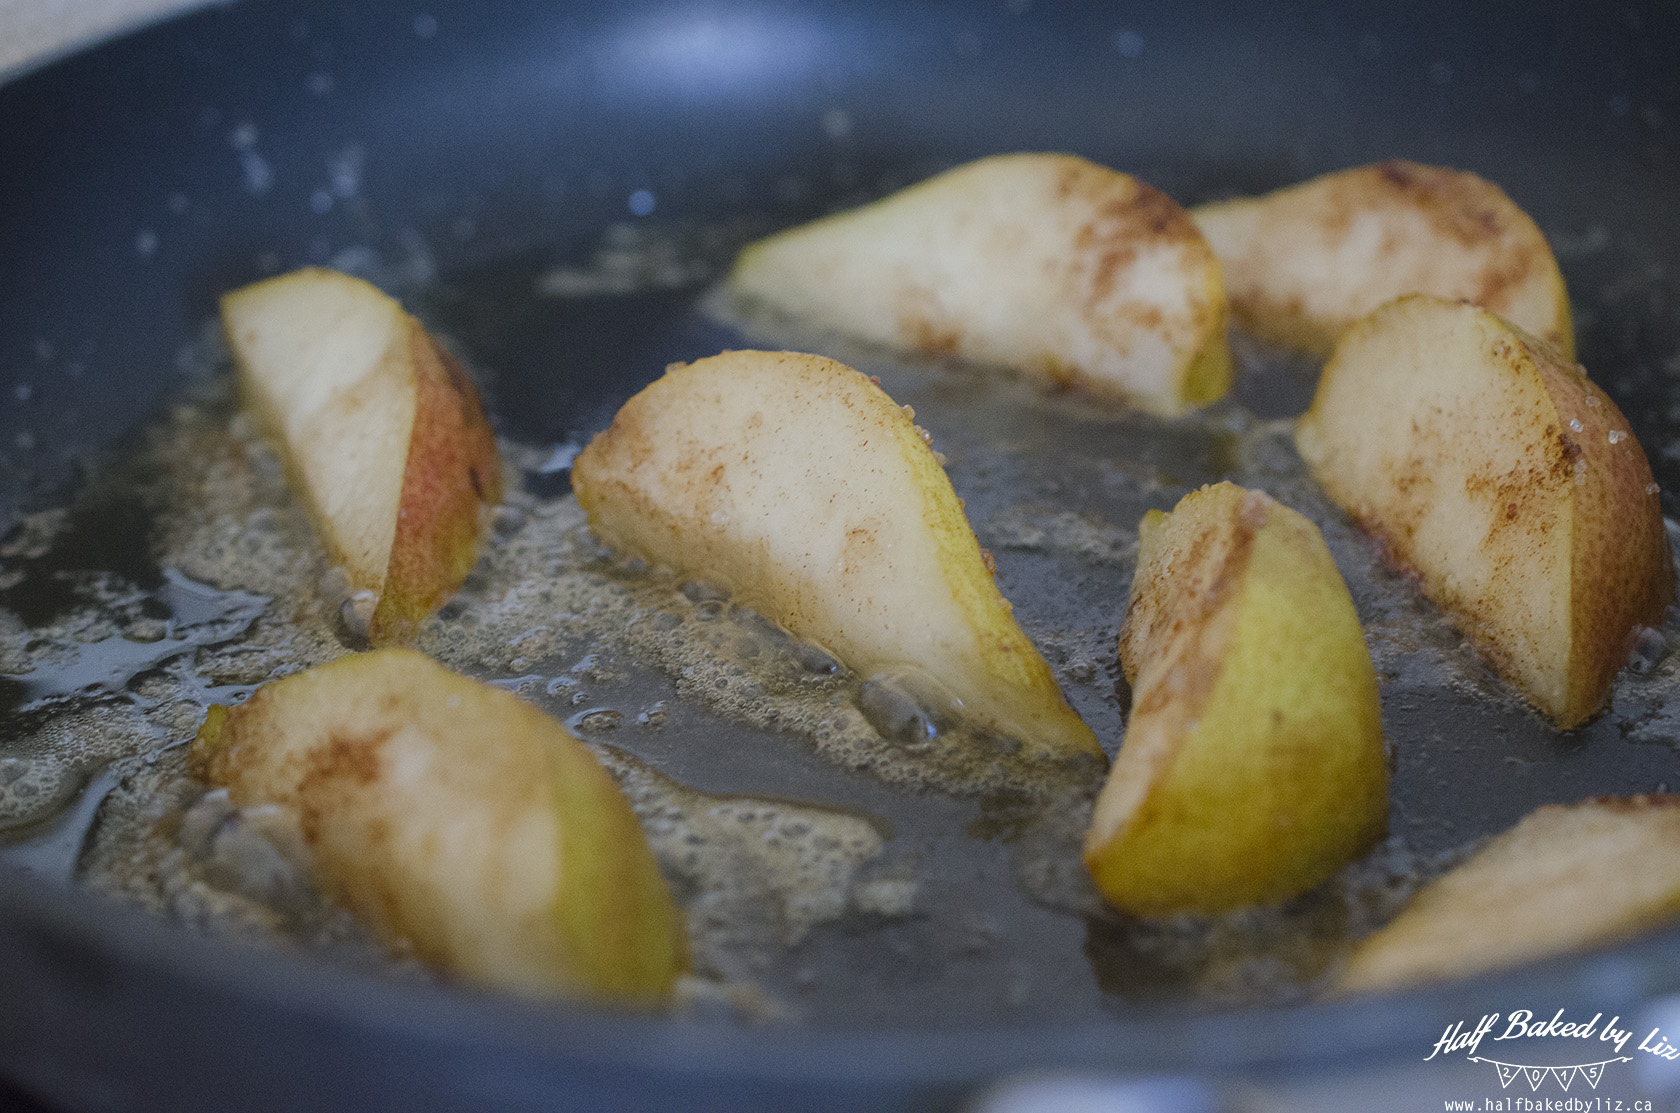 3 - Fry Pears